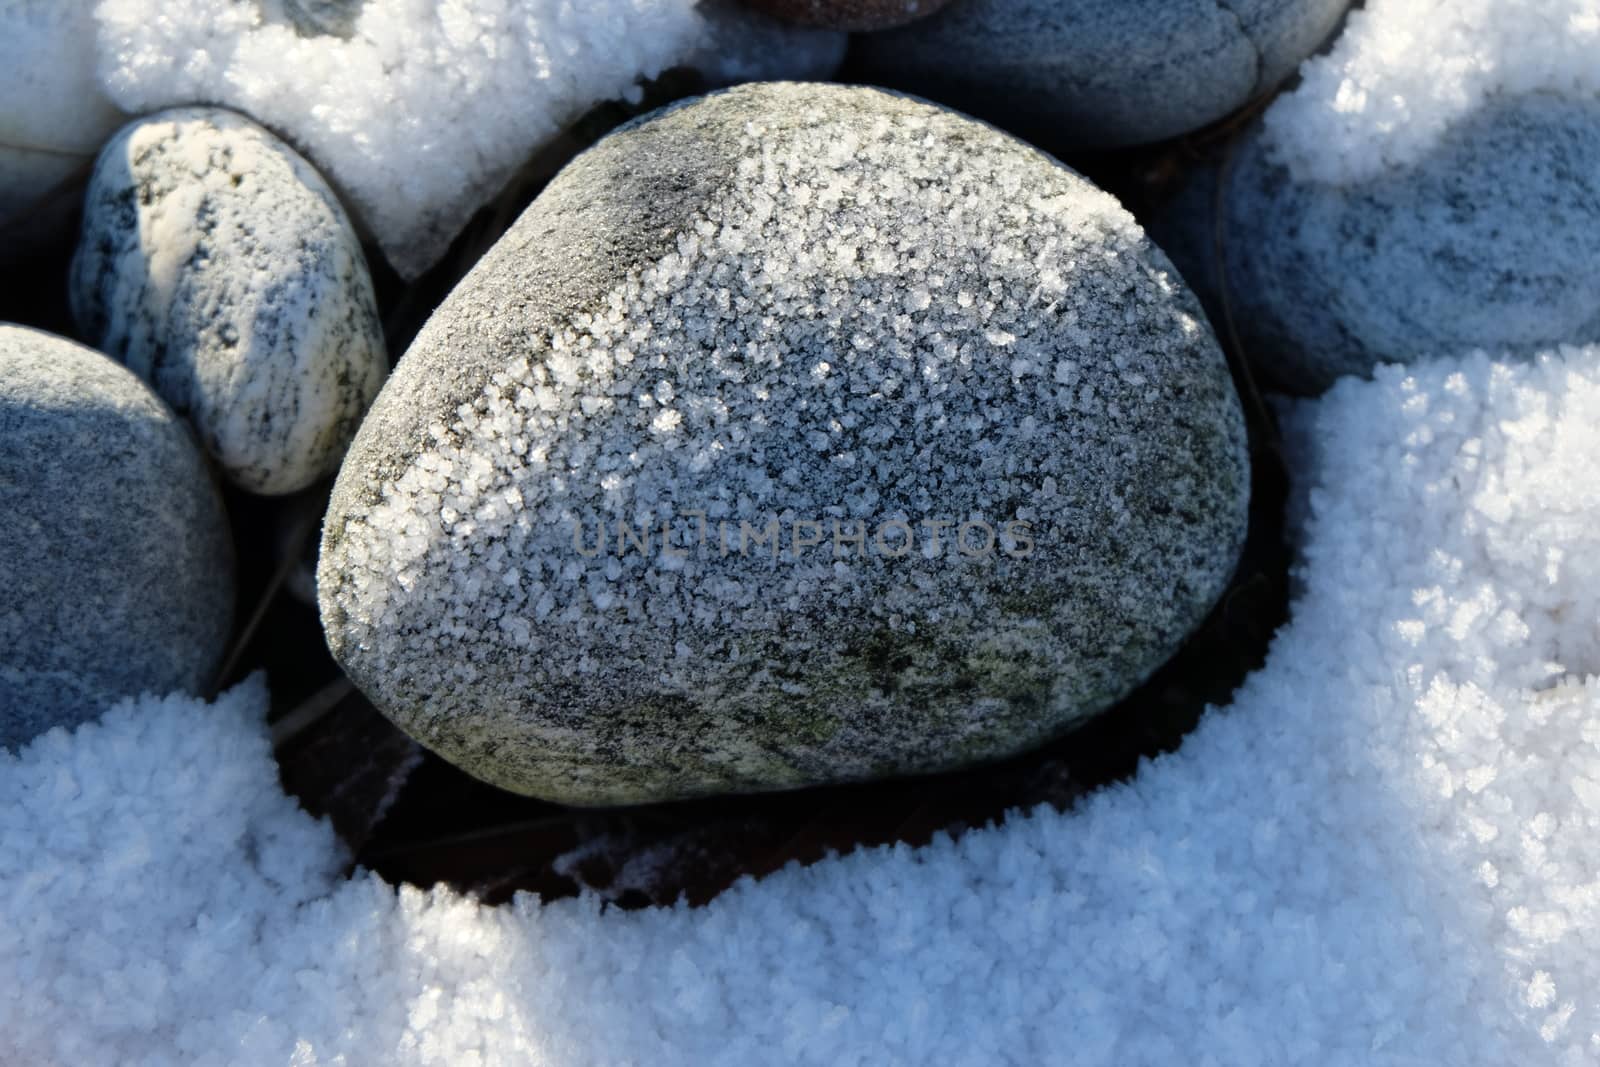 Stones with snow